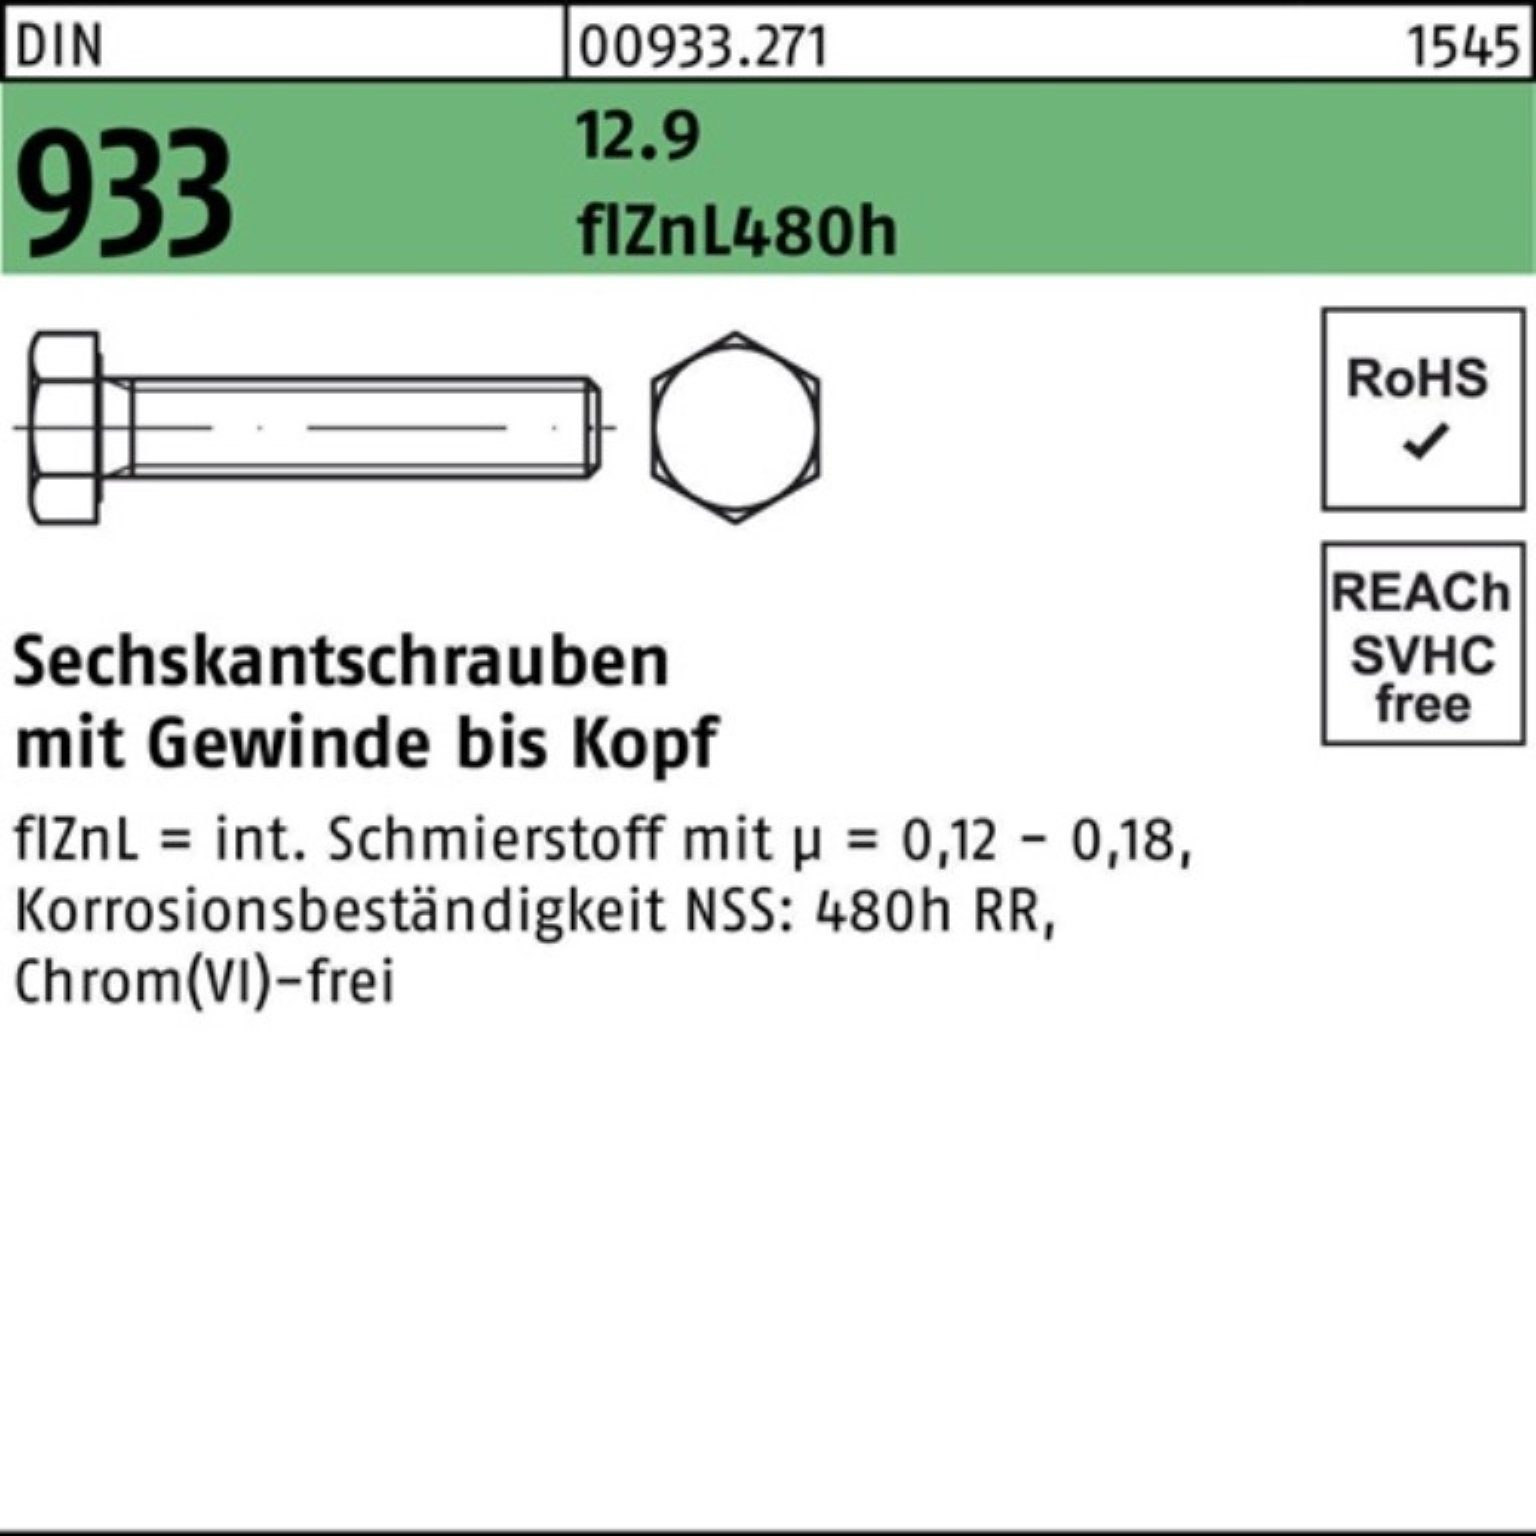 Reyher Sechskantschraube 200er Pack Sechskantschraube DIN 933 VG M8x 35 12.9 flZnL 480h zinklam